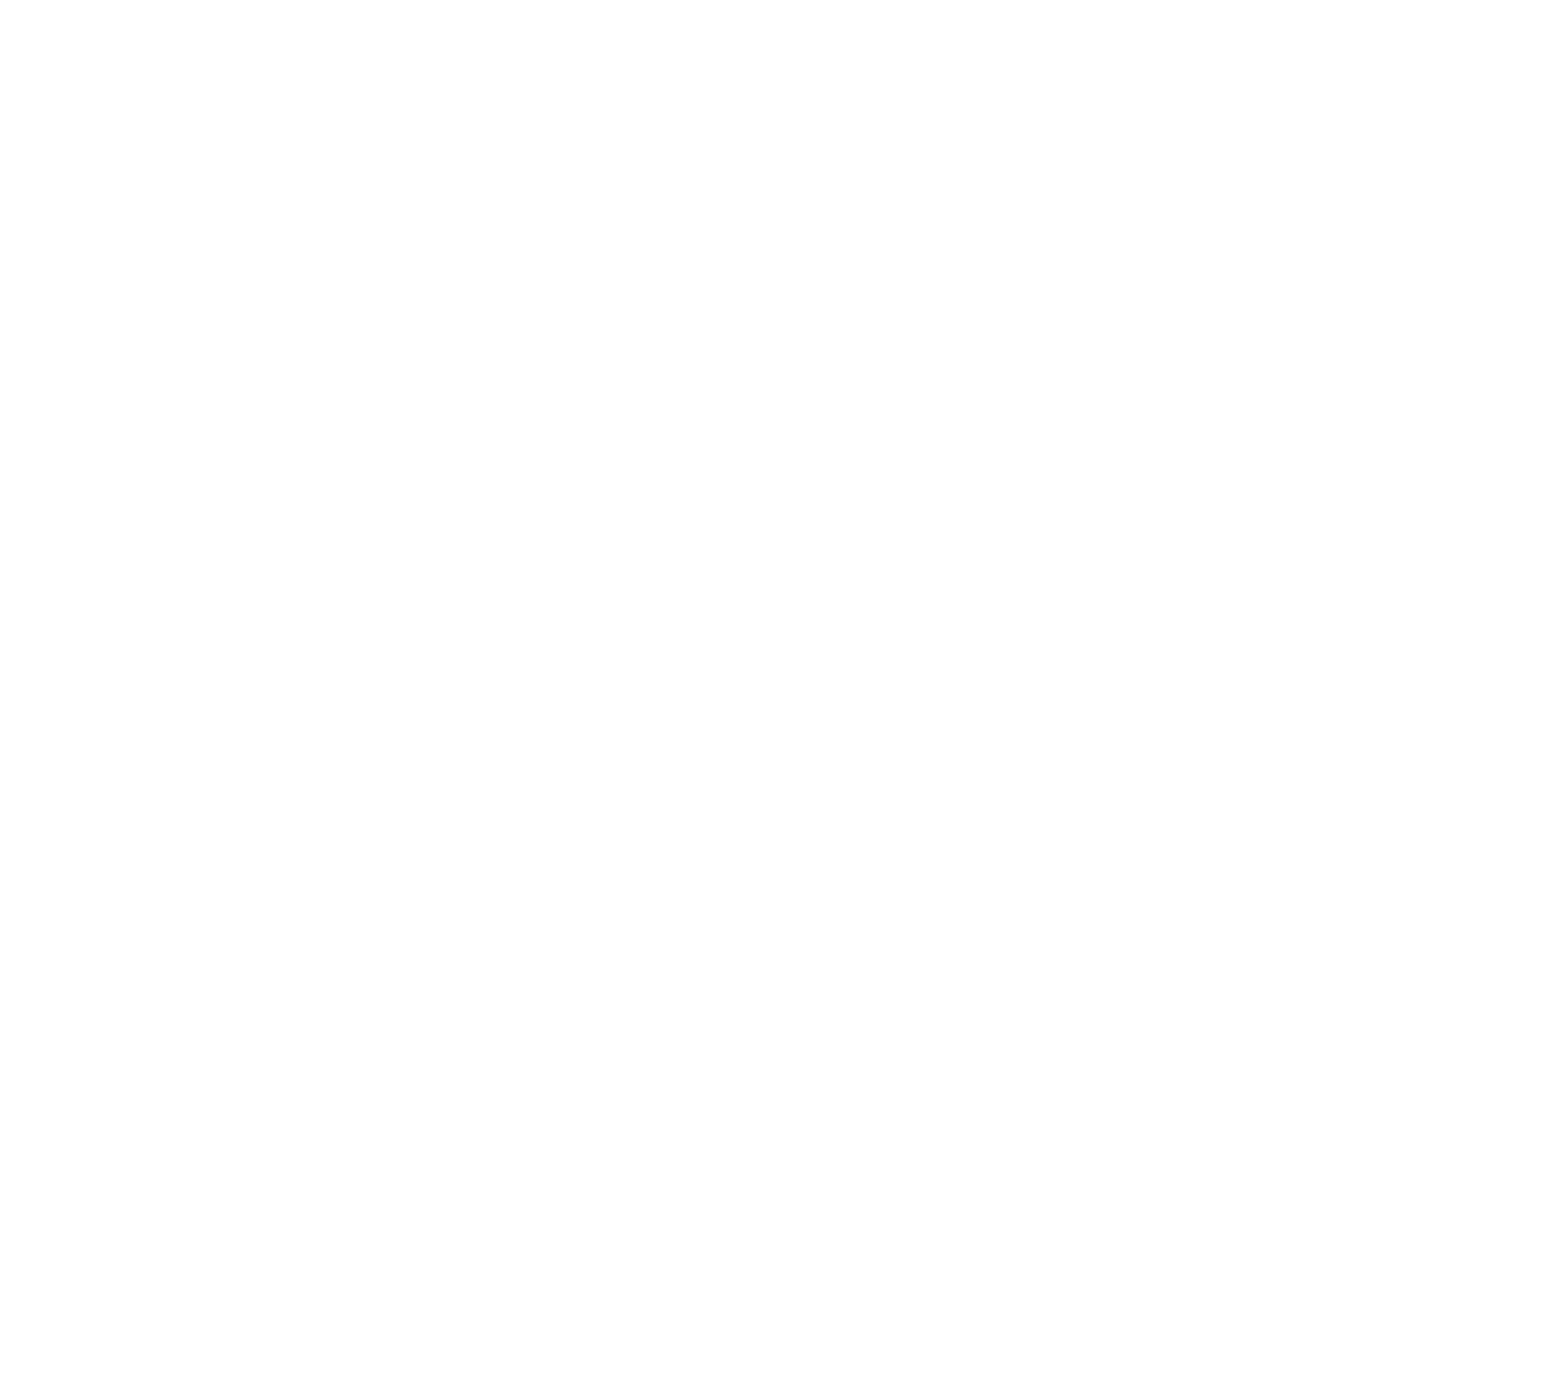 Indutrade logo for dark backgrounds (transparent PNG)